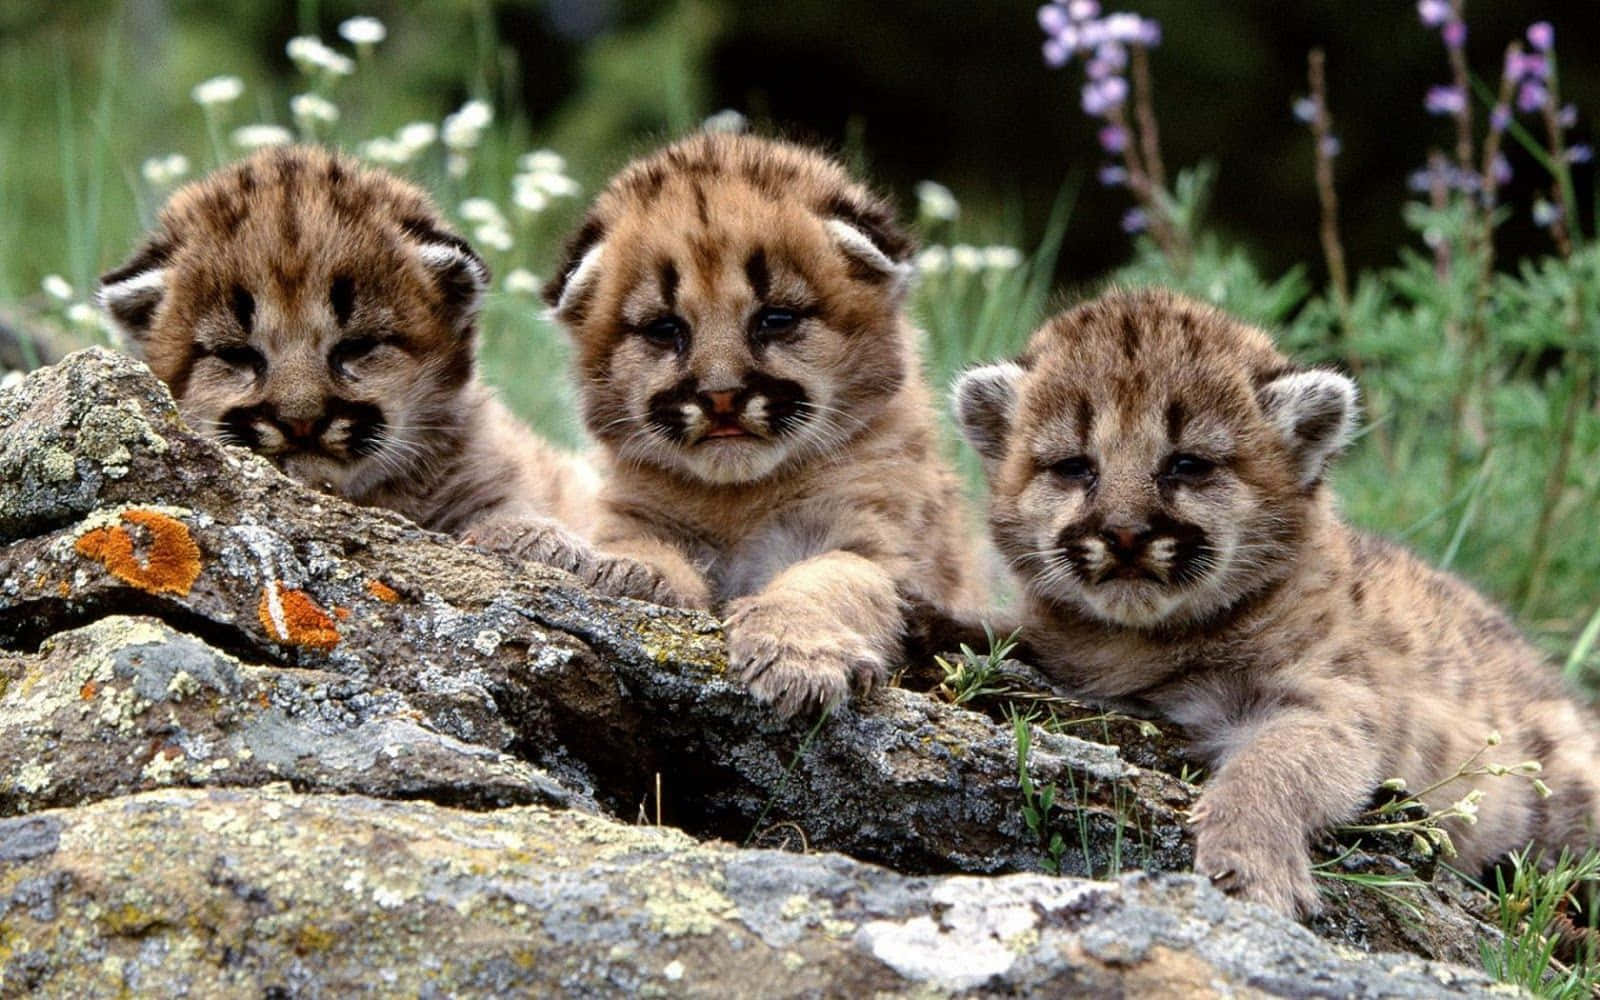 Hintergrundmit Baby-tigern